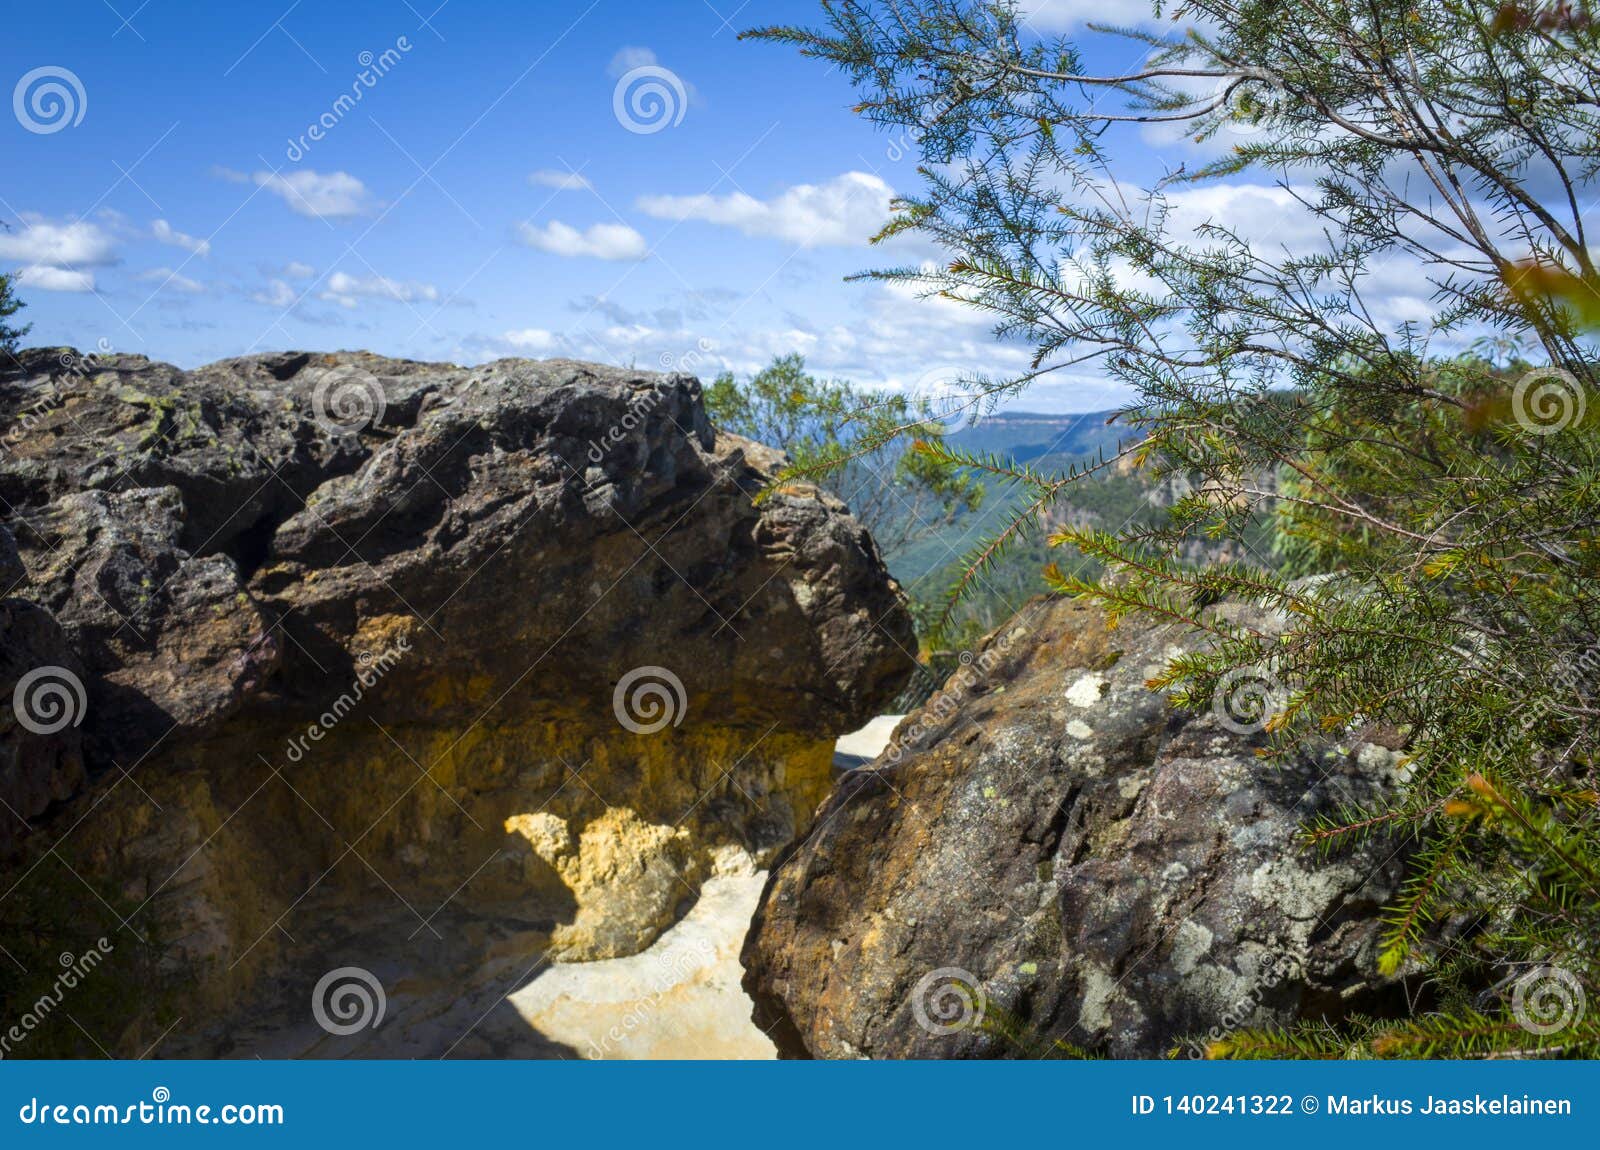 lørdag Information Modsige Huge Sandstone Boulders on Mountain Top in Australia Stock Photo - Image of  nature, blue: 140241322